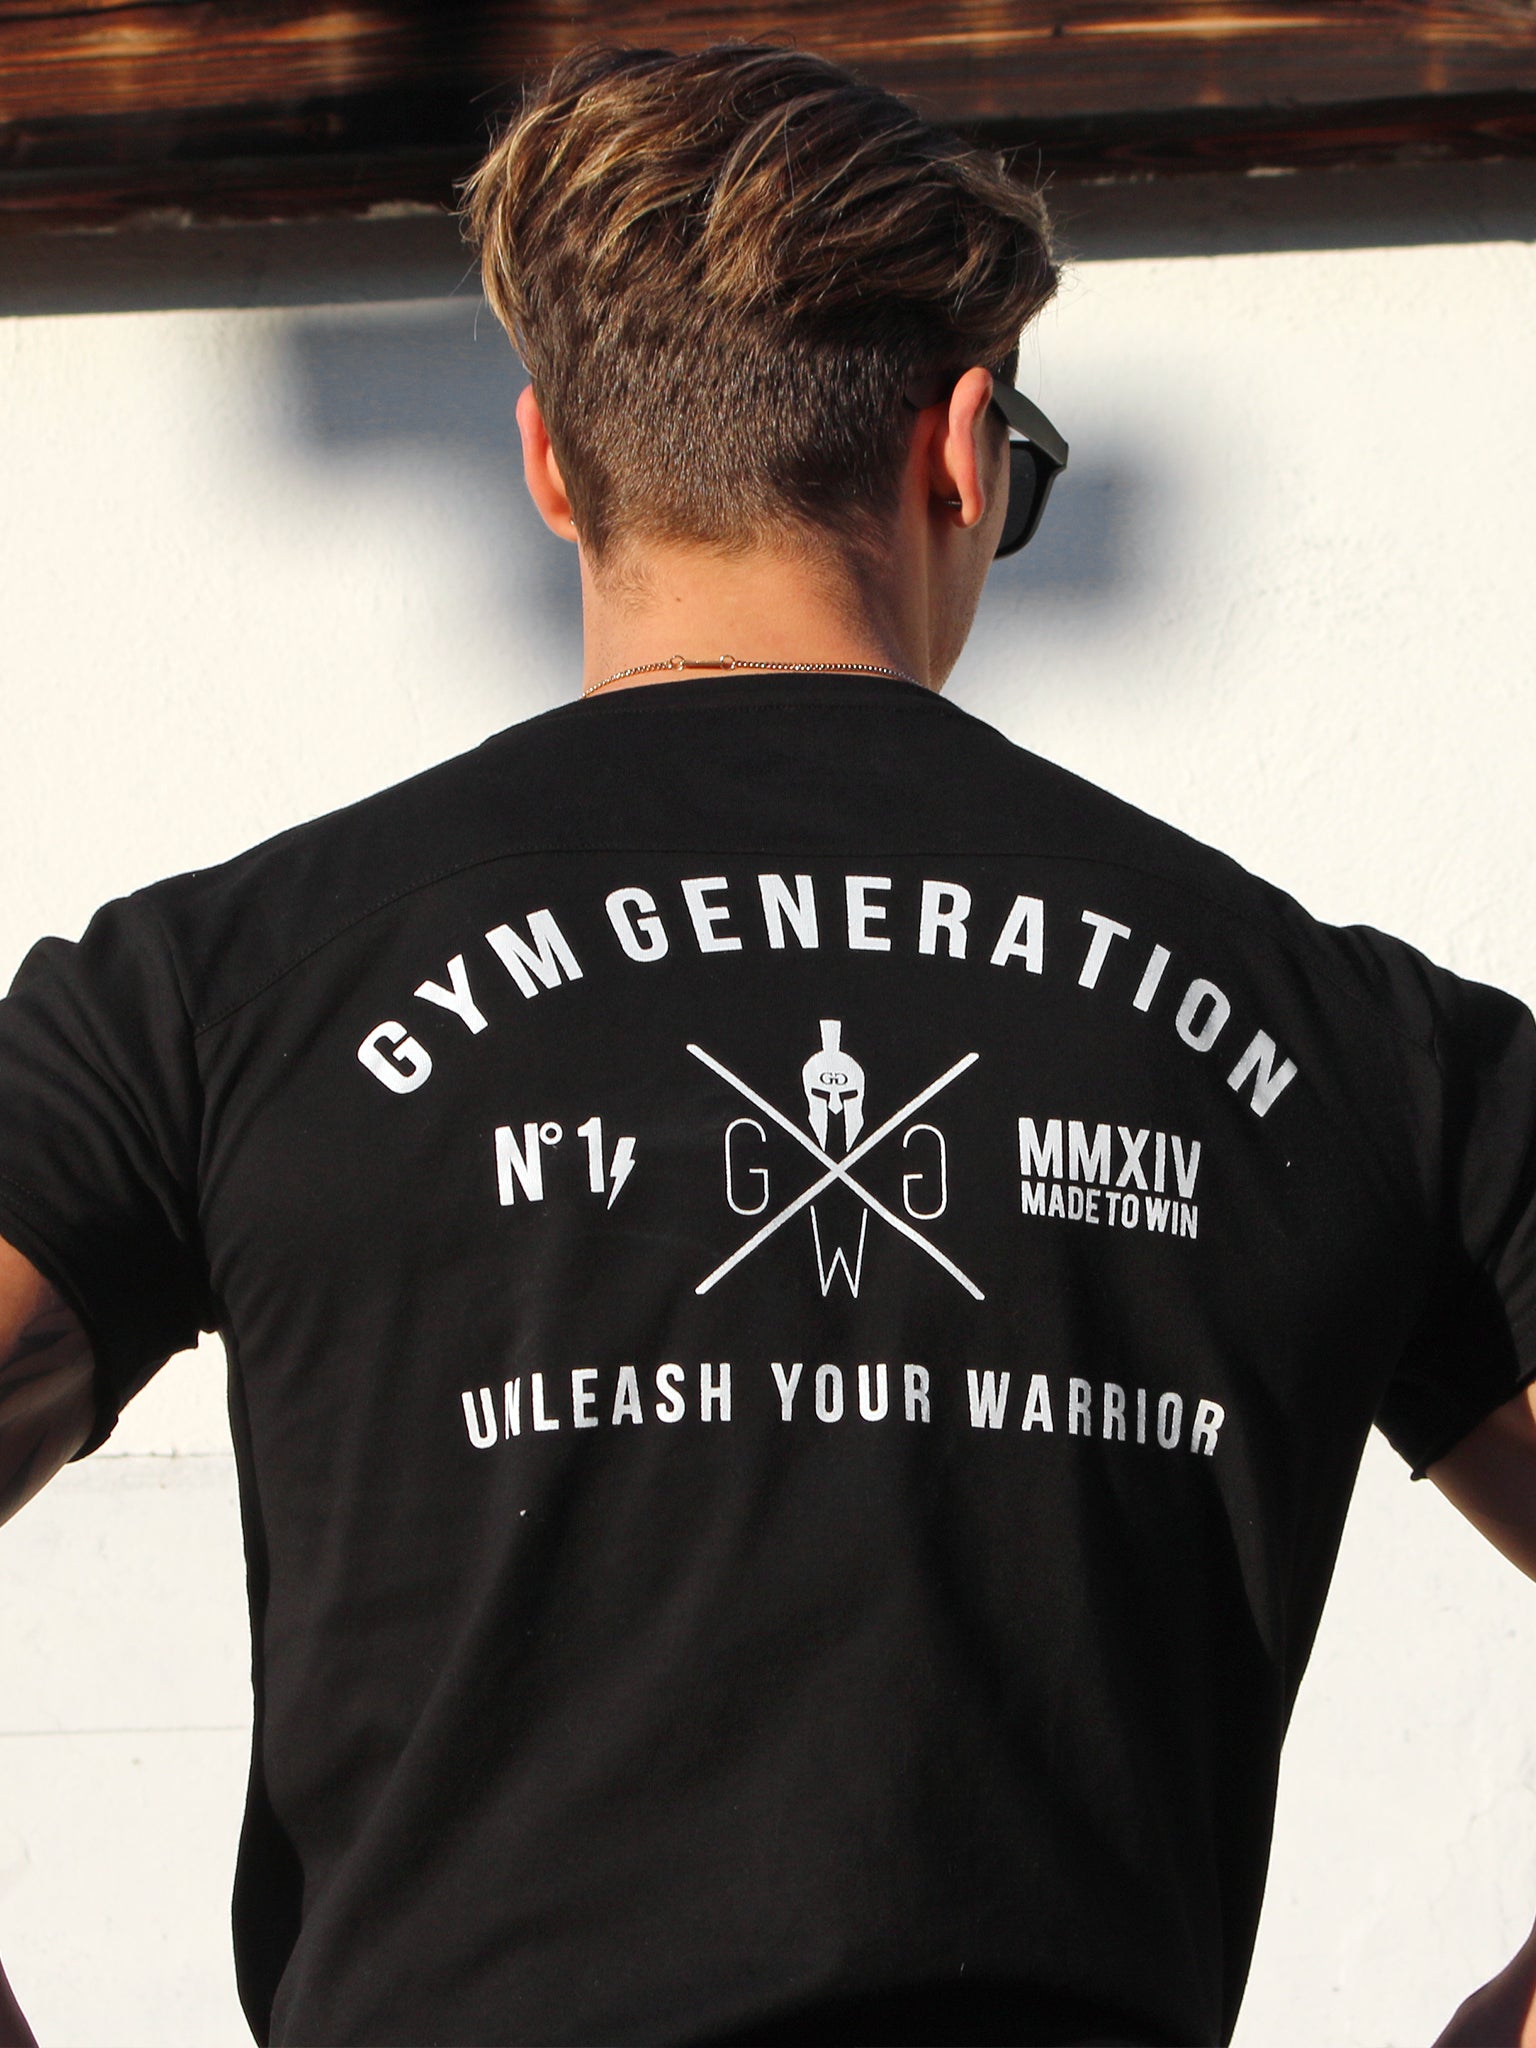 Vielseitig kombinierbares schwarzes Gym T-Shirt, ein echter Hingucker für jede Gelegenheit.